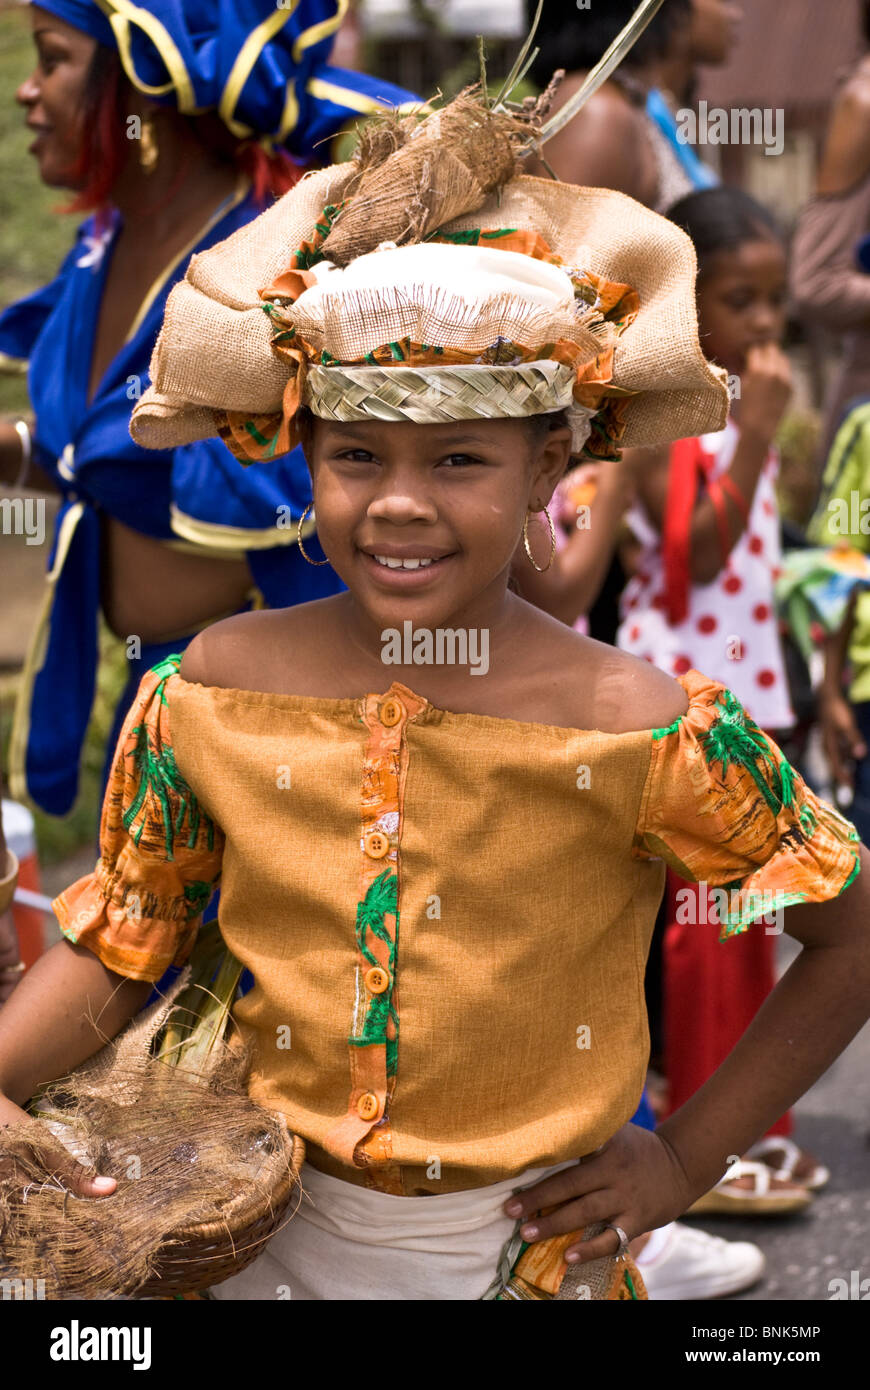 Giovane ragazza in posa per la sua fotografia durante la street parade all'unica Seu Festival che si tiene ogni anno a Curacao Foto Stock